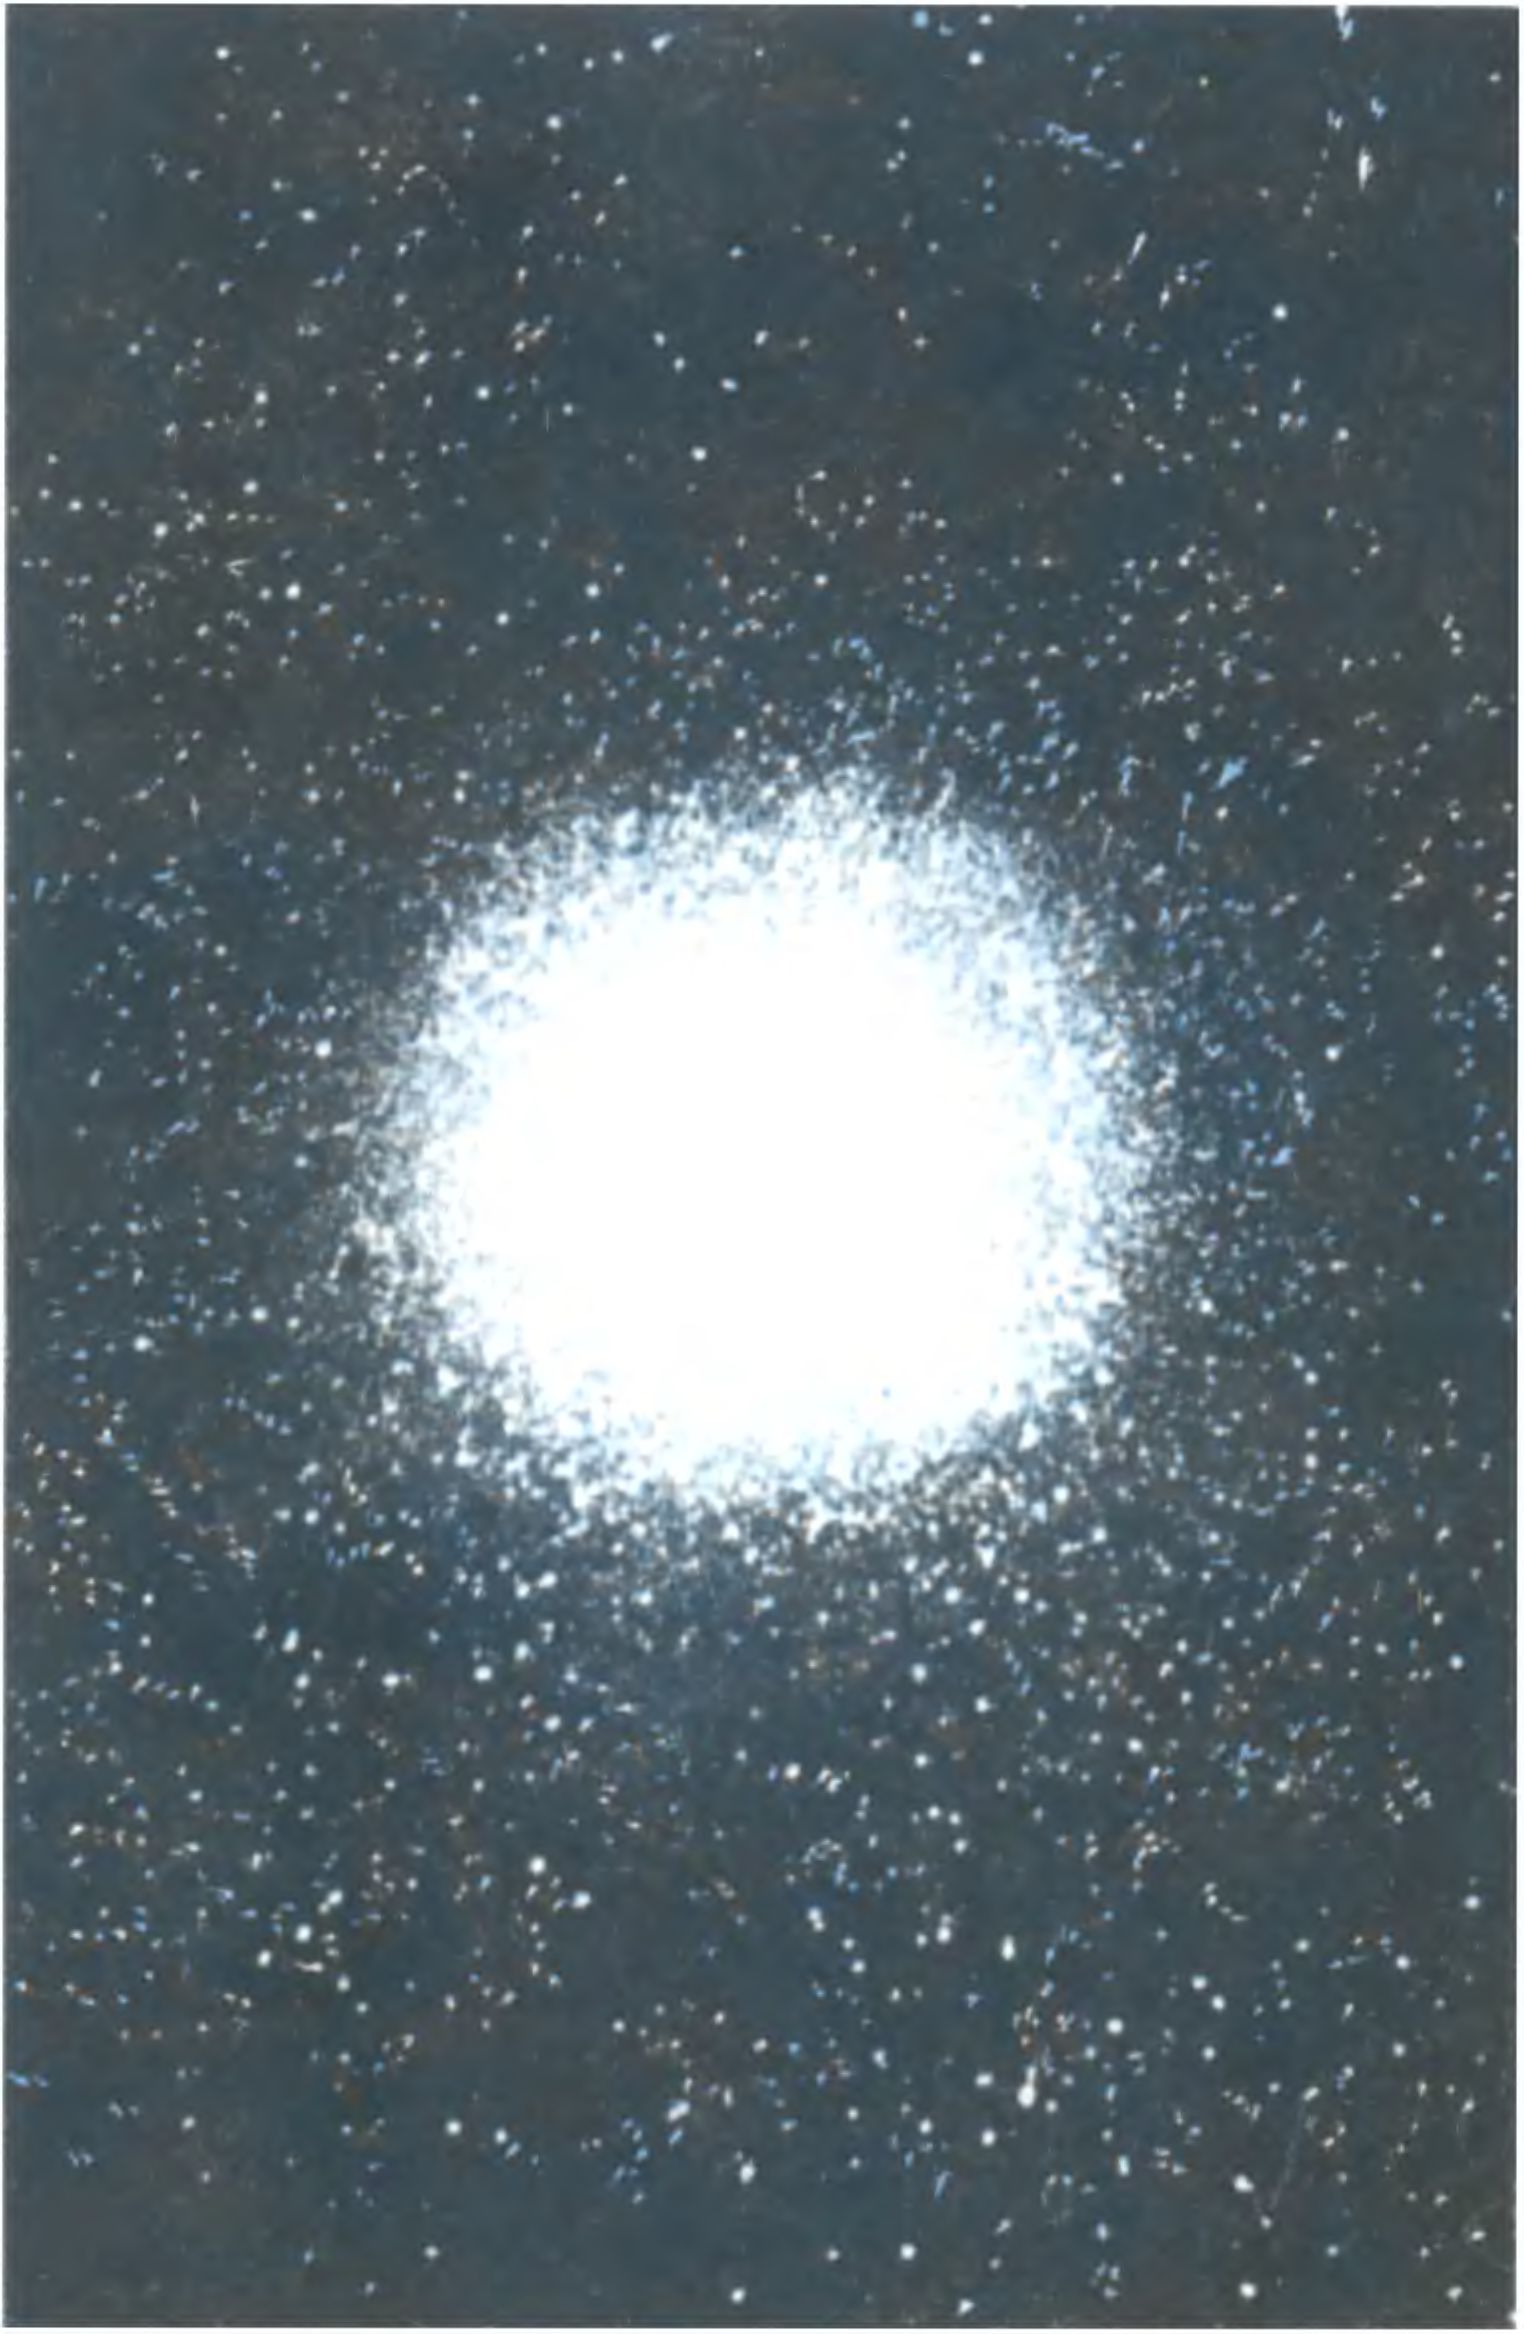 Шаровое звездное скопление Омега из созвездия Центавра